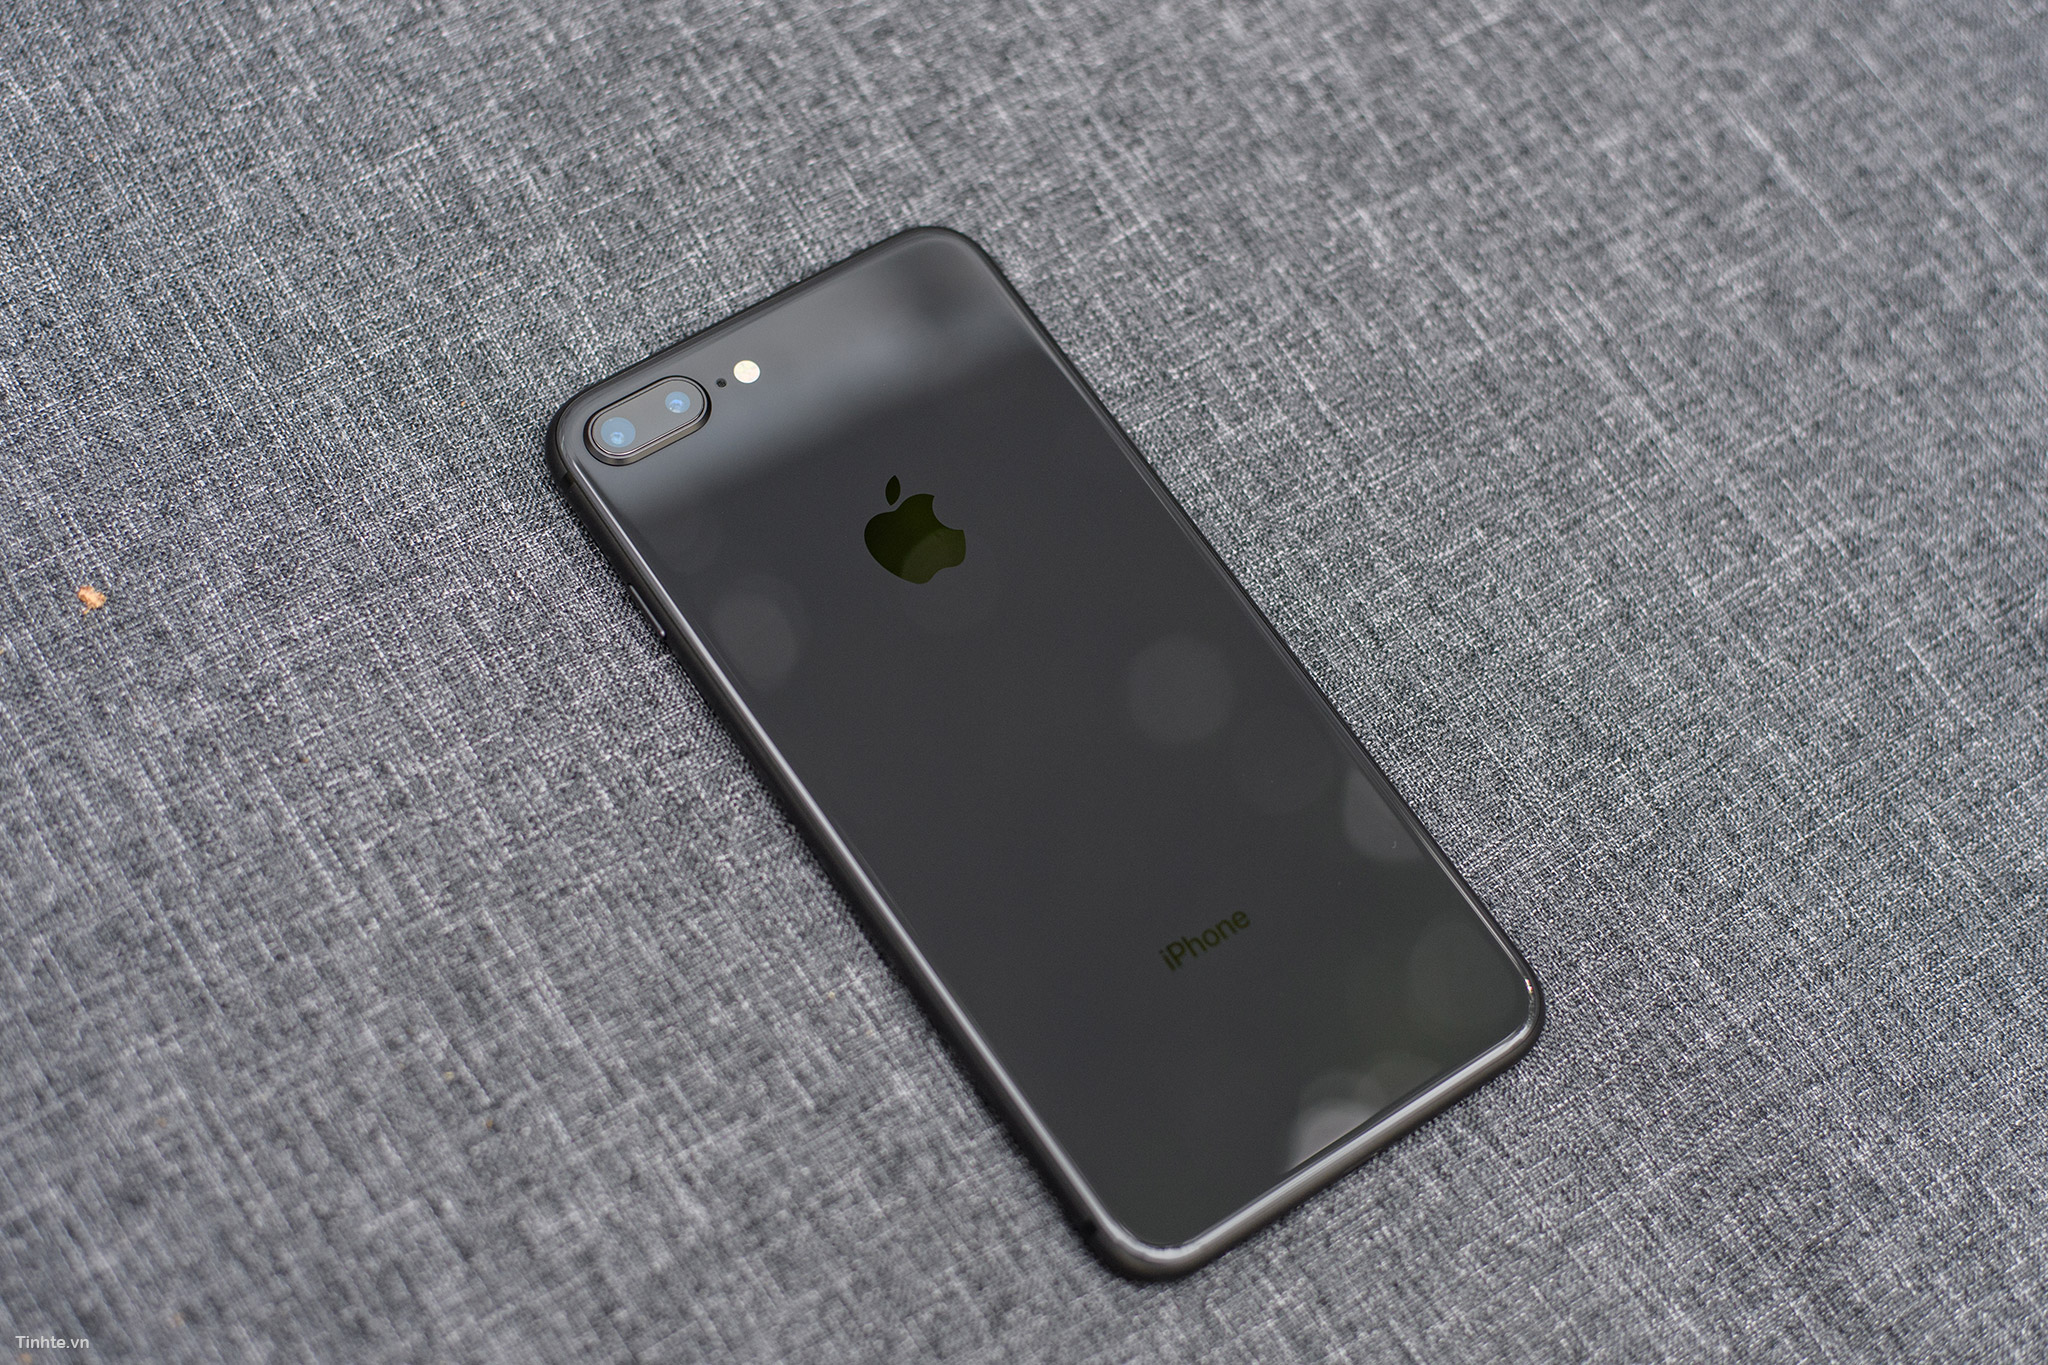 iPhone 8 Plus Space Gray - màu xám lông chuột (Space Gray): Điện thoại iPhone 8 Plus màu xám lông chuột này là một tác phẩm thiết kế đẹp mắt của Apple. Chất liệu kim loại sang trọng kết hợp cùng màu sắc độc đáo này sẽ khiến chiếc điện thoại của bạn trở nên đẳng cấp và thu hút mọi ánh nhìn.